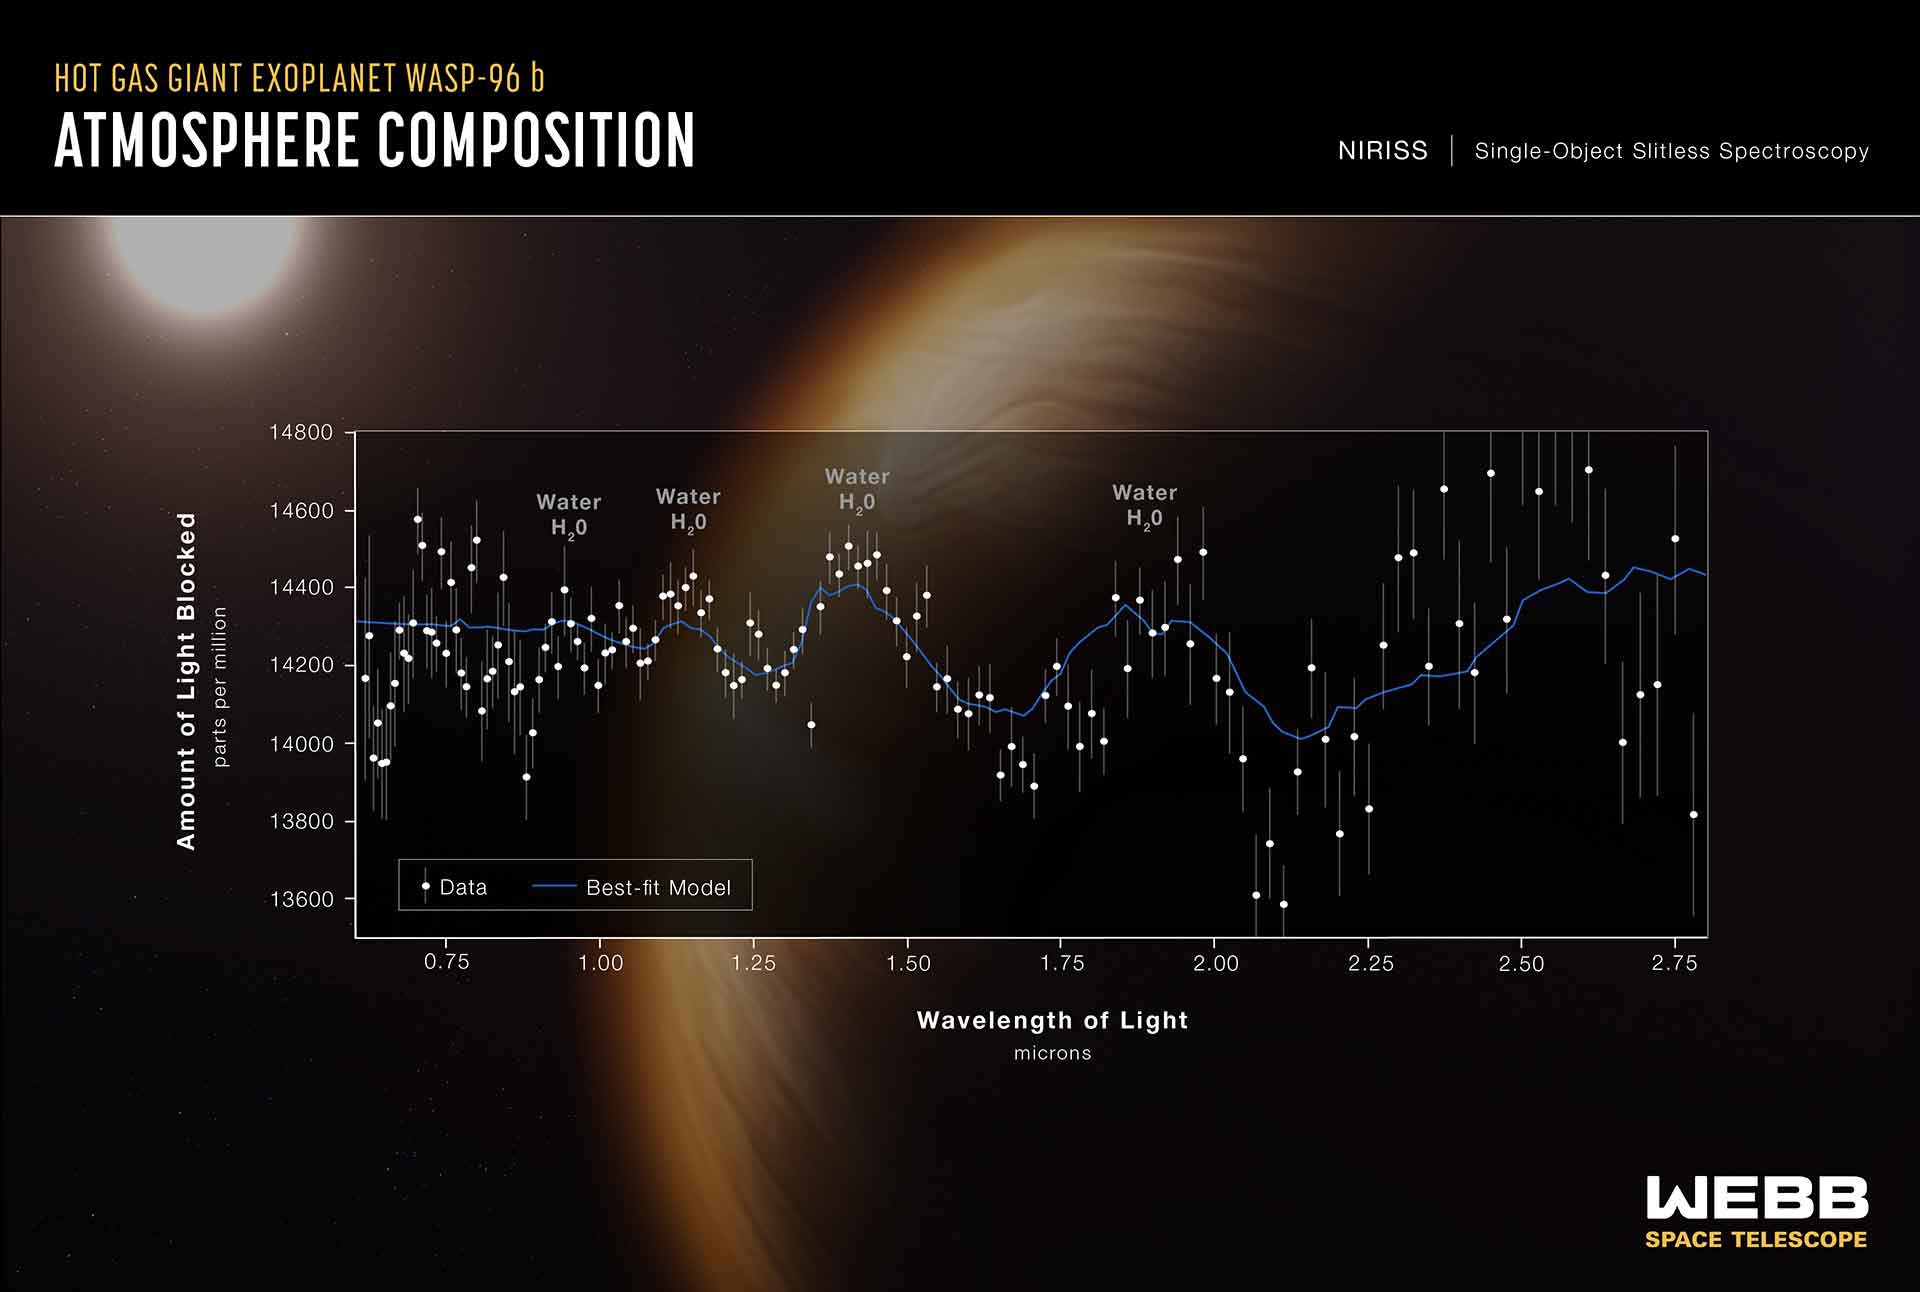 James Webb Space Telescope: nuovi occhi per l’universo